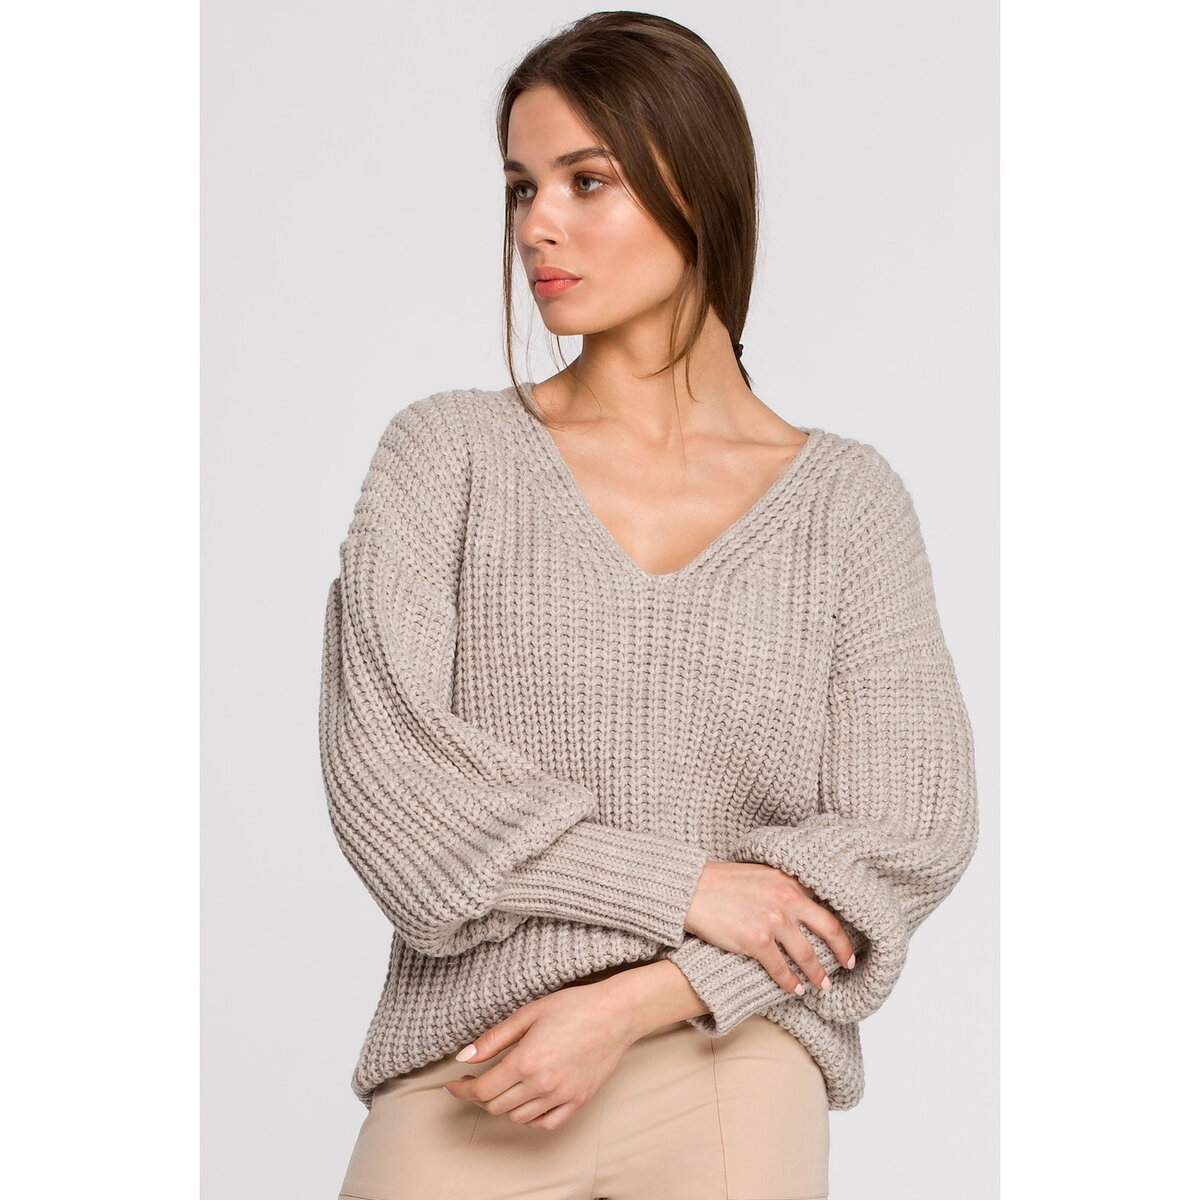 Volný béžový svetr pro dámy - STYLOVE, béžová L/XL i10_P60809_1:543_2:117_